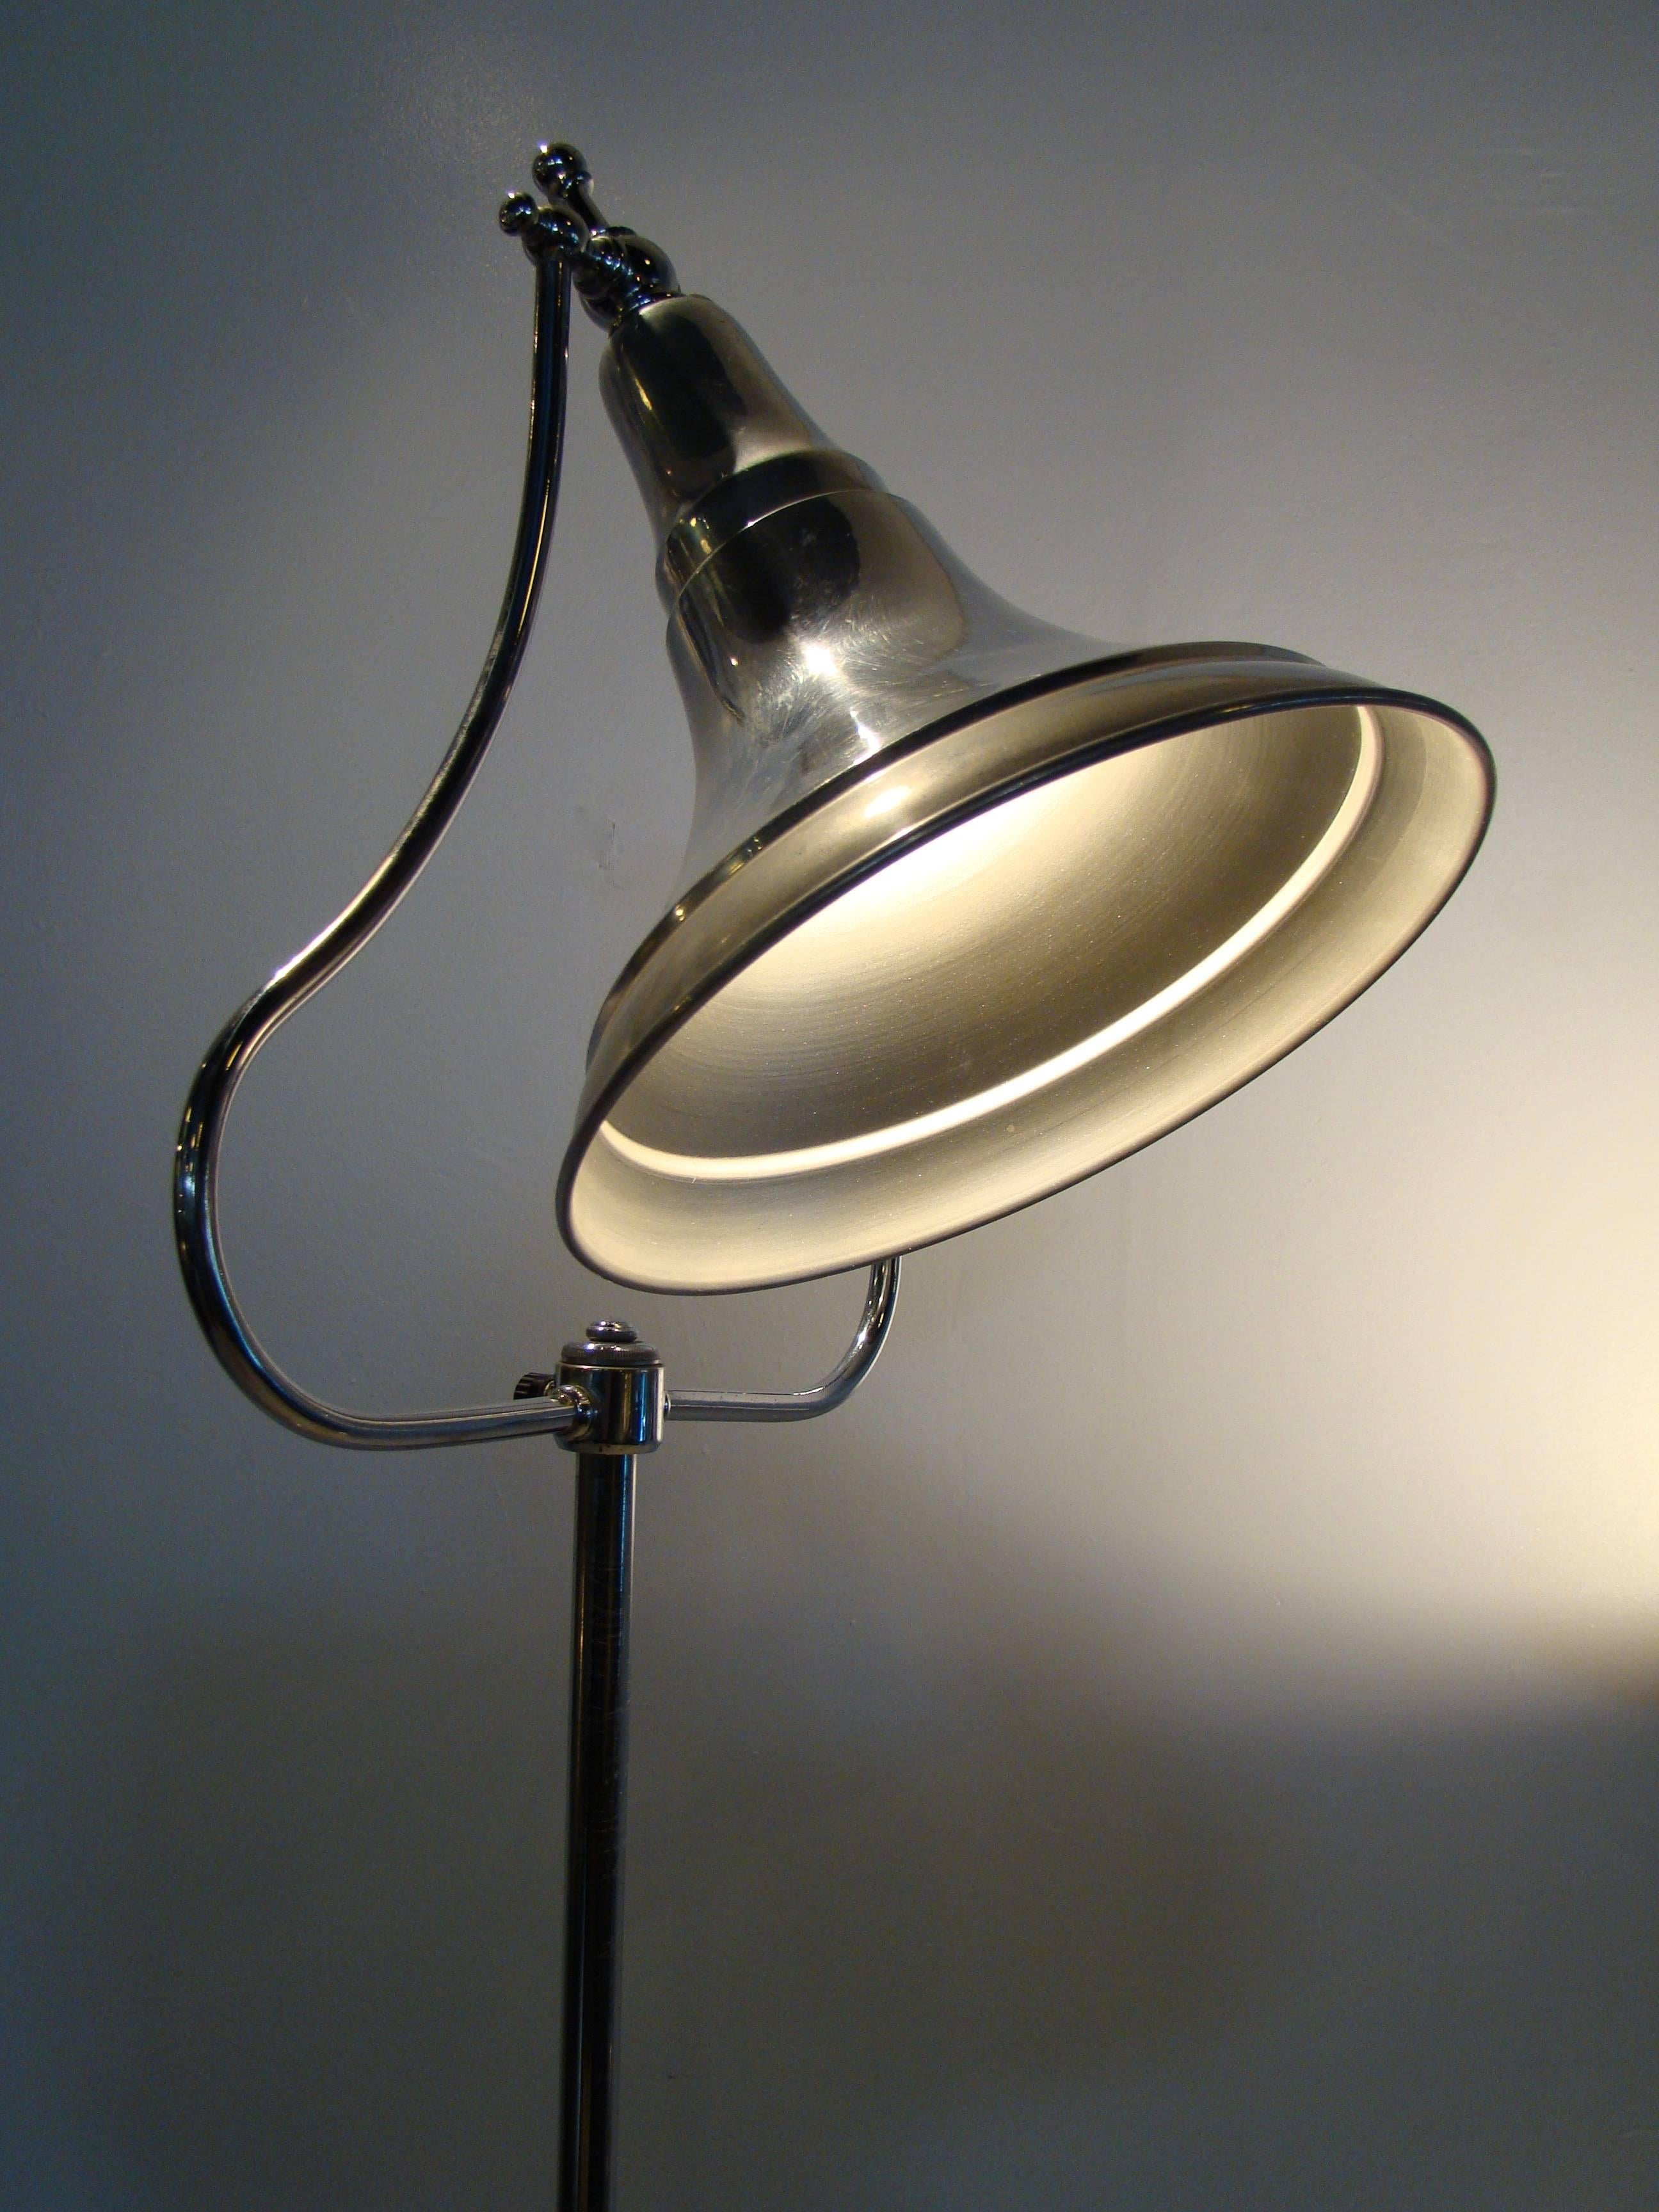 Mid-20th Century Machine Age Art Deco Industrial Medical Aluminium Chrome Floor Lamps For Sale